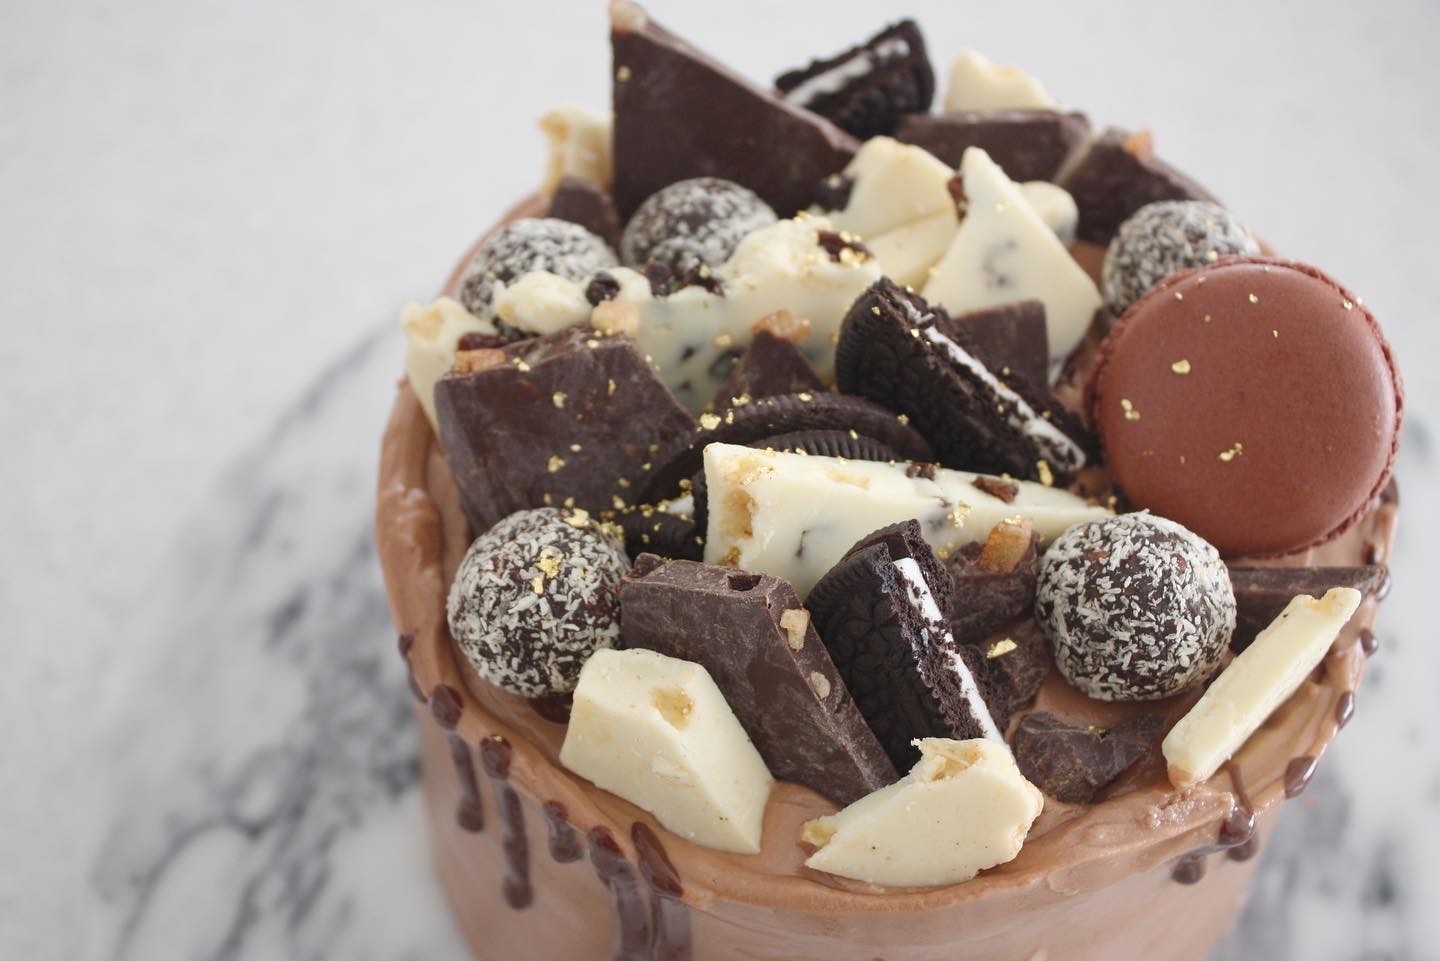 チョコたっぷり おしゃれケーキ パリ風 ママスタイル Blog Madame Figaro Jp フィガロジャポン